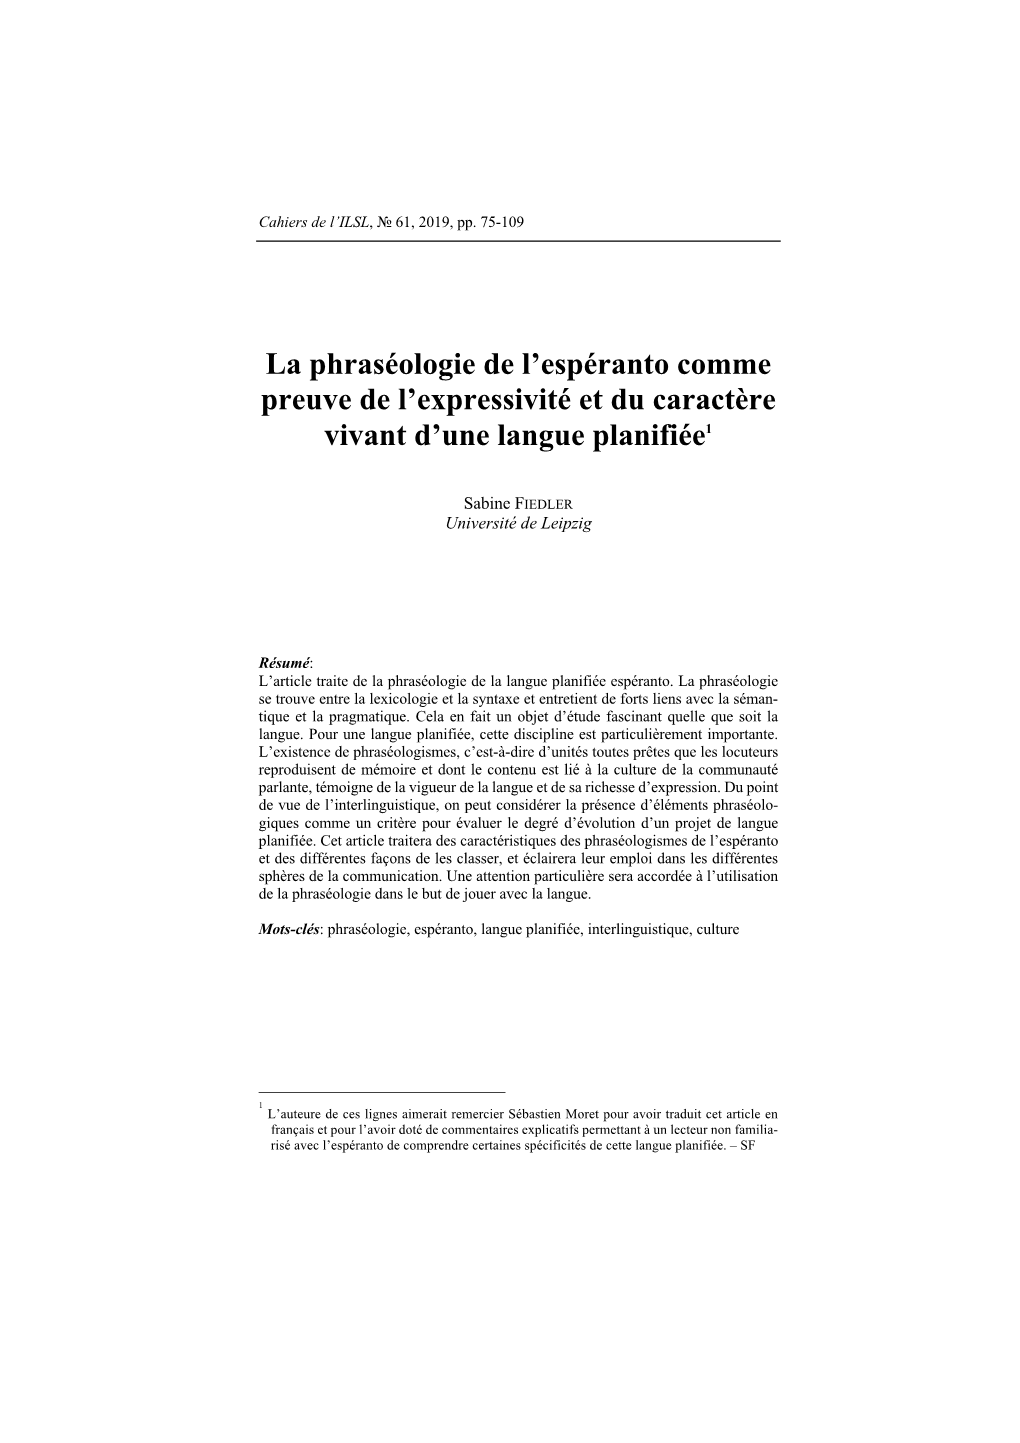 La Phraséologie De L'espéranto Comme Preuve De L'expressivité Et